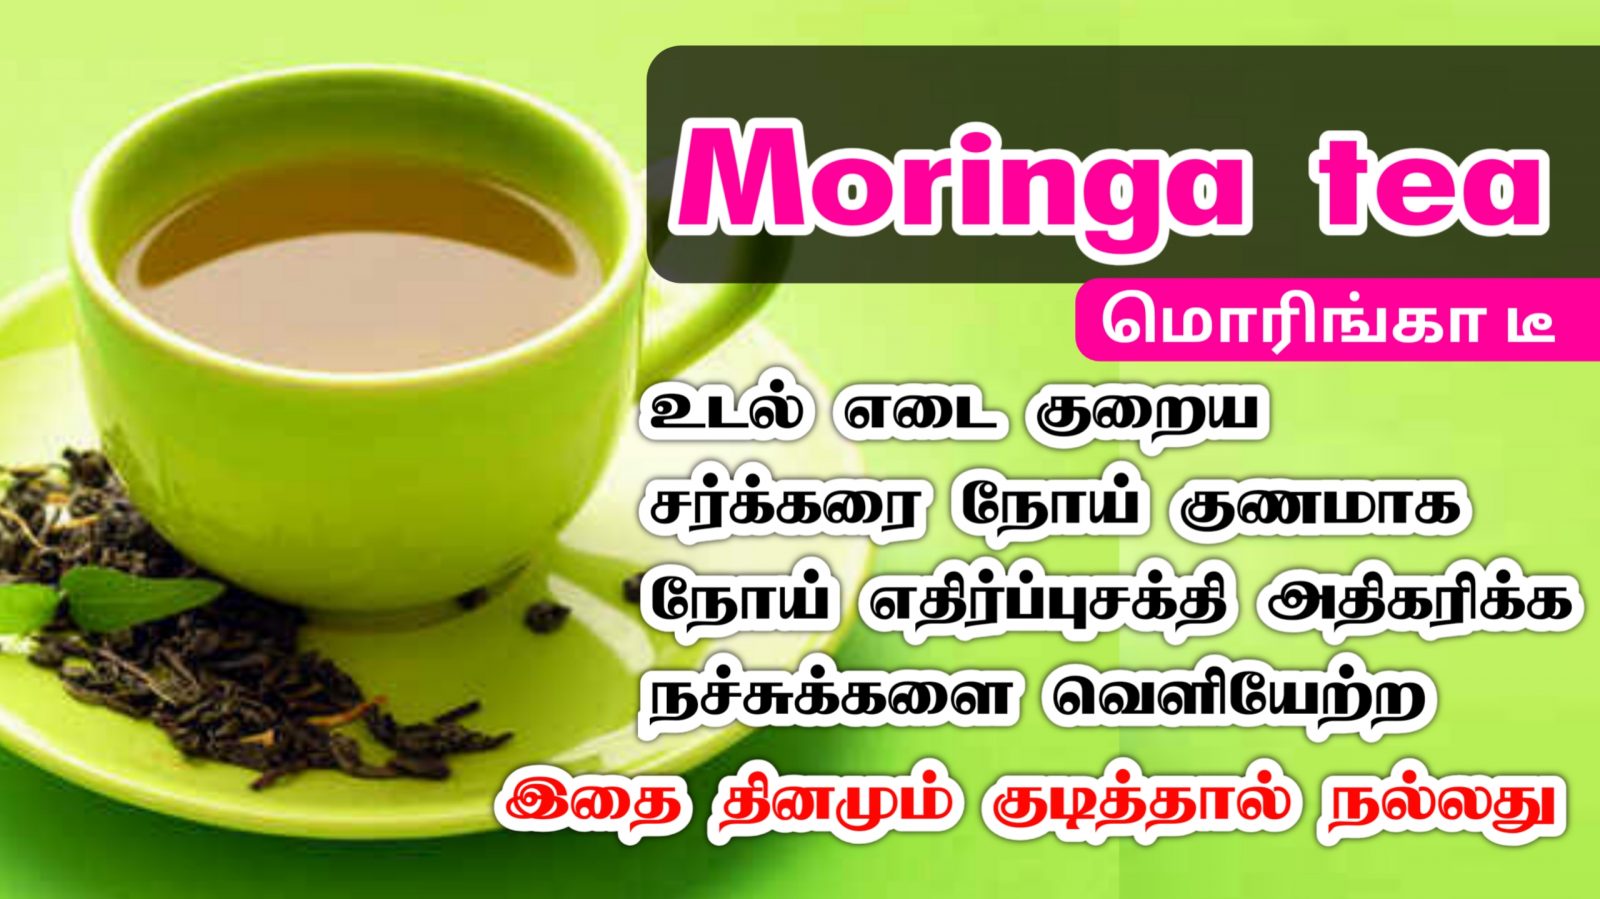 மோரிங்கா டீ குடிப்பதால் உடலுக்கு கிடைக்கும் நன்மைகள் | Moringa tea Benefits in Tamil